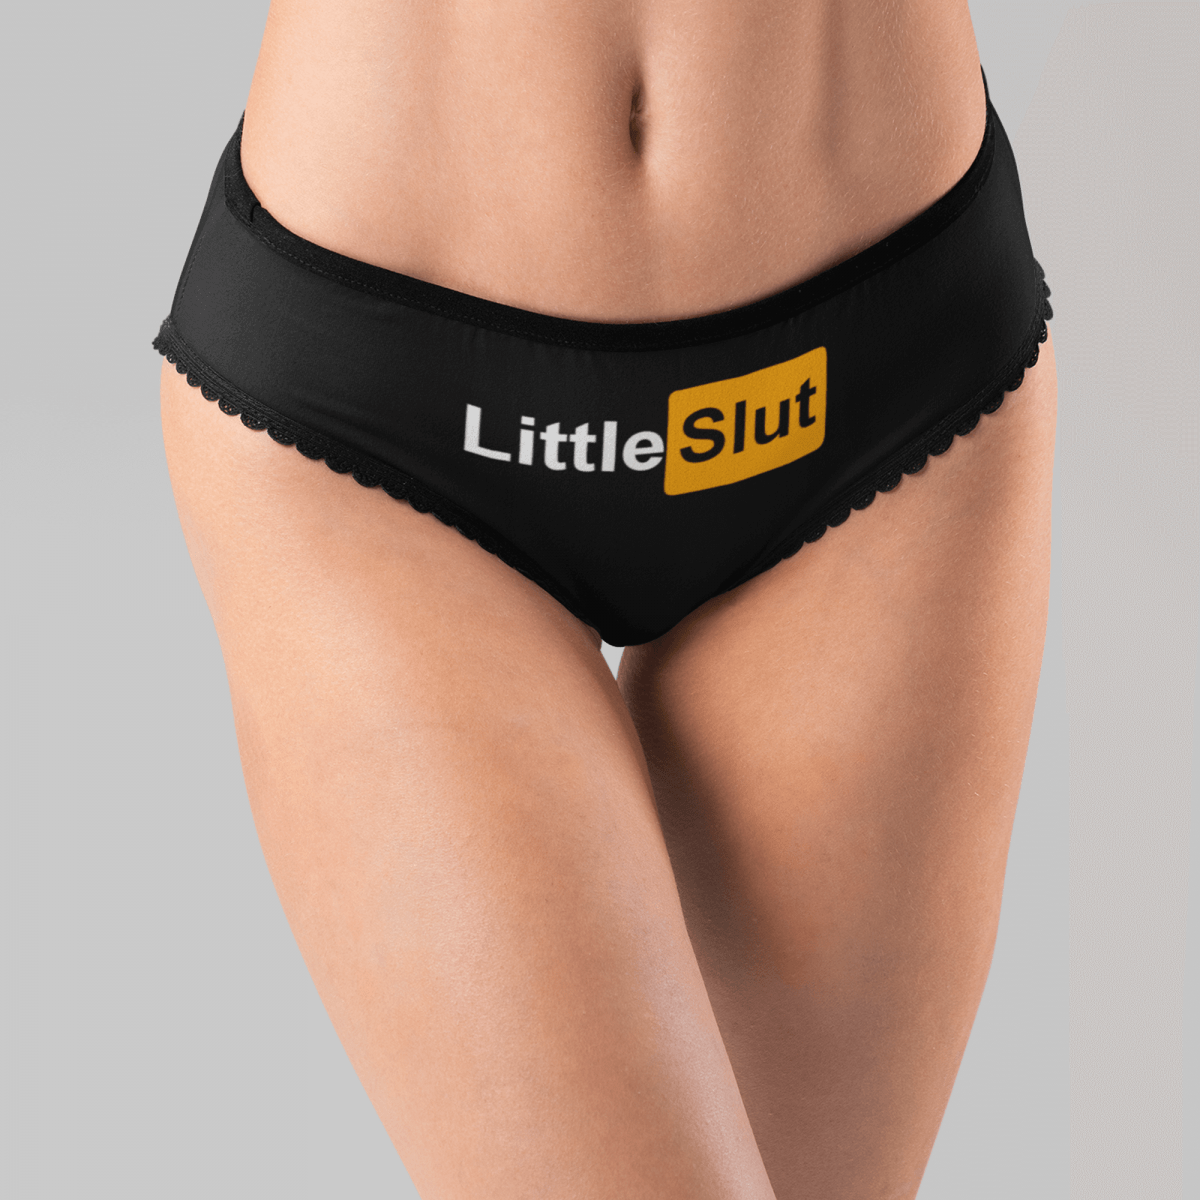 Little-Slut-Panties-Filthy-BDSM-Kinky-Panties-2